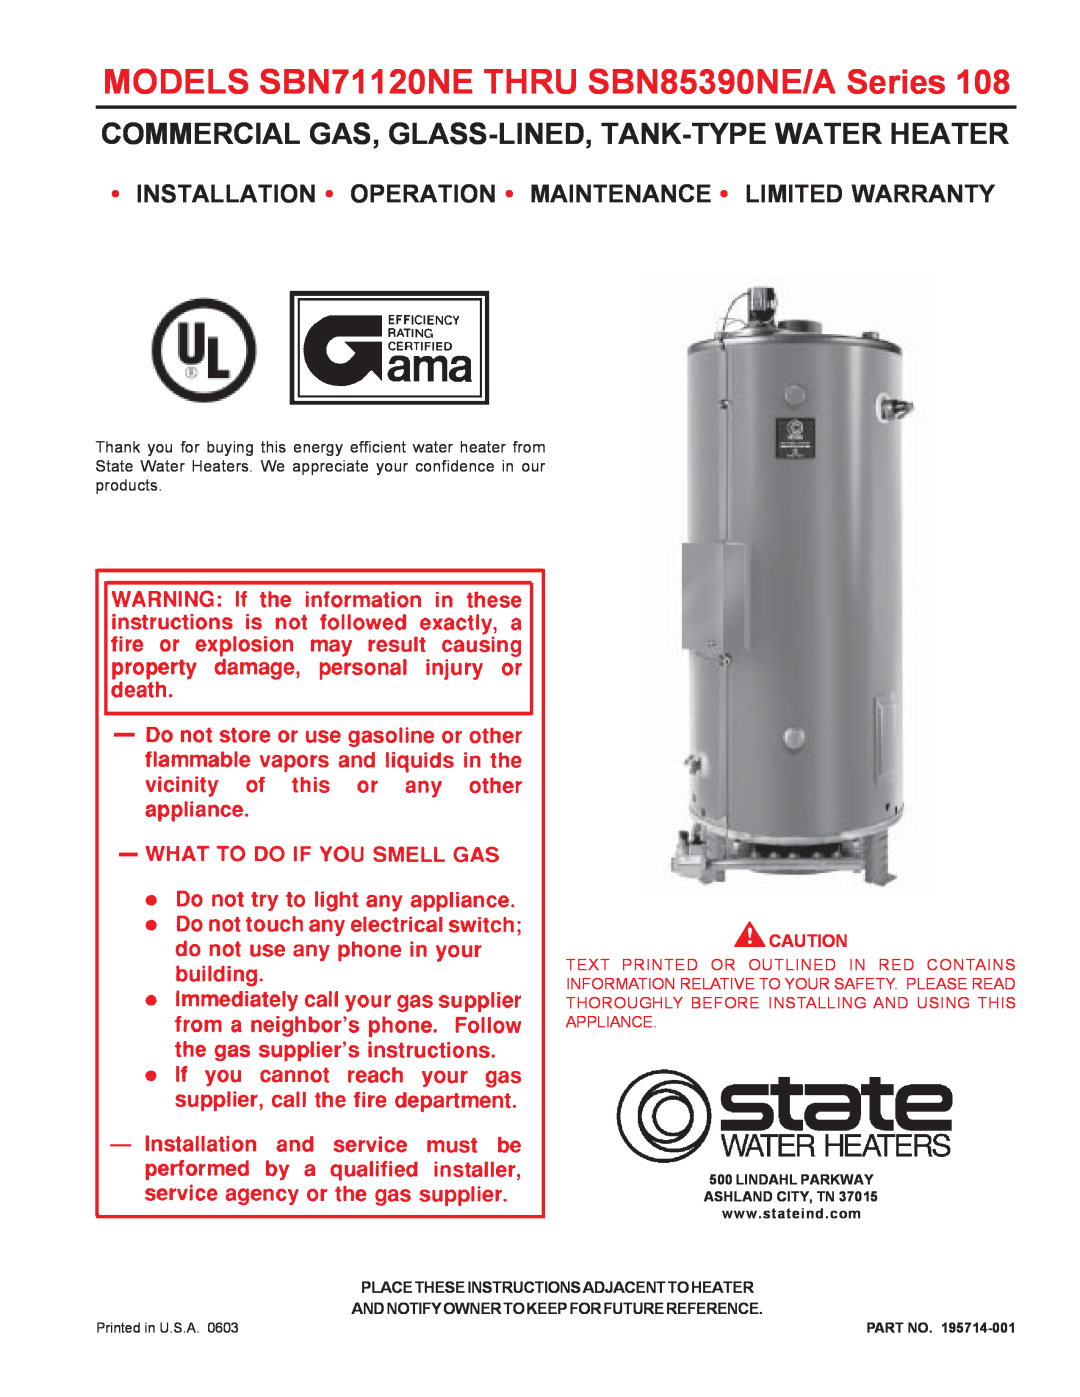 State Industries SBN85390NE/A warranty Installation Operation Maintenance Limited Warranty 